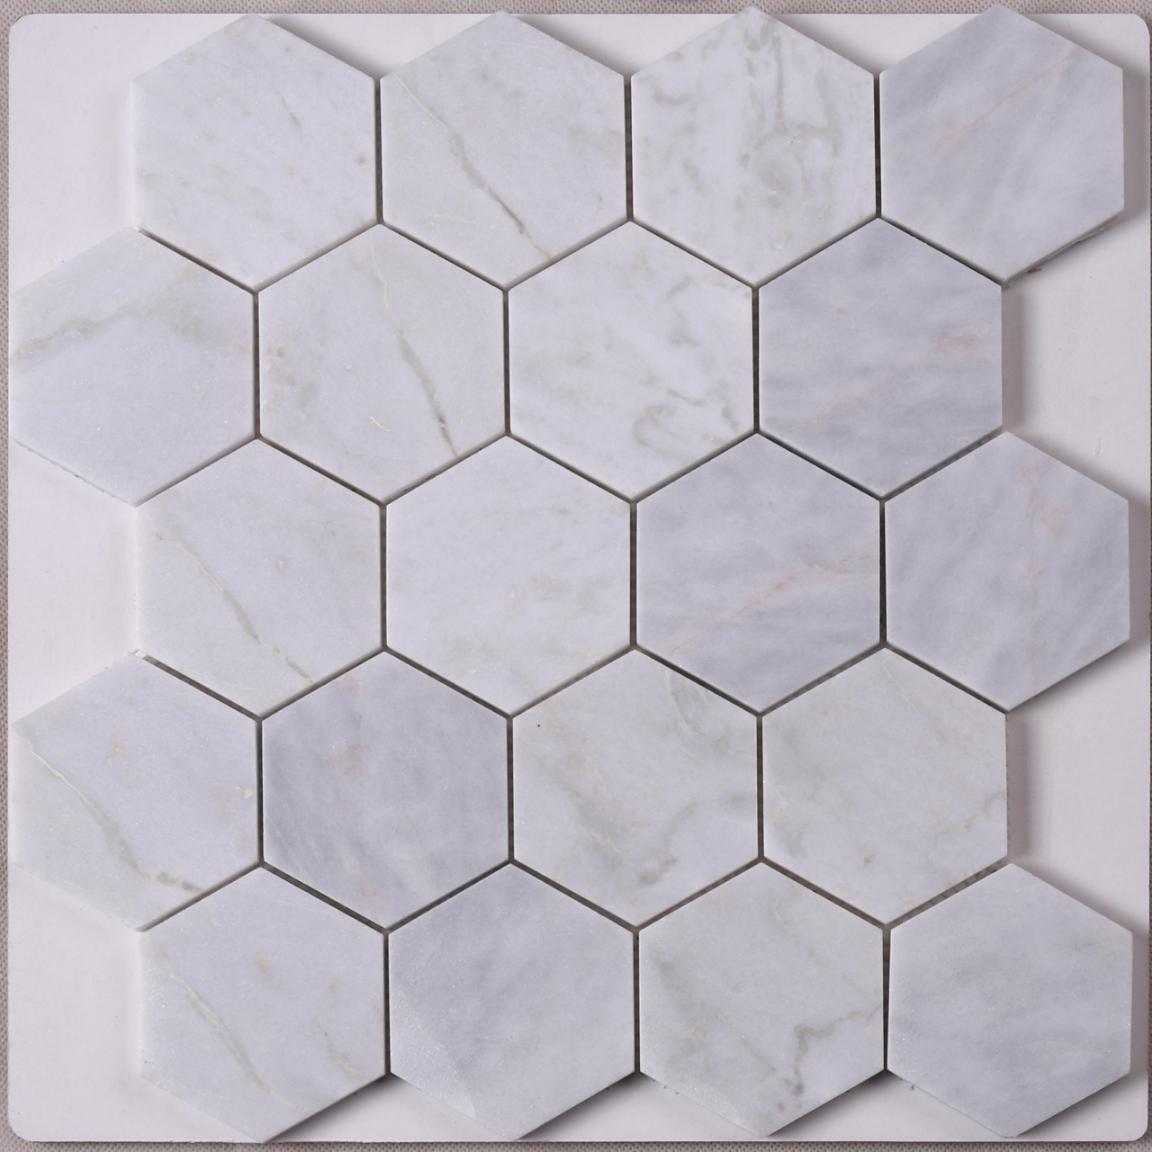 Heng Xing golden mosaic tile art Suppliers for bathroom-1